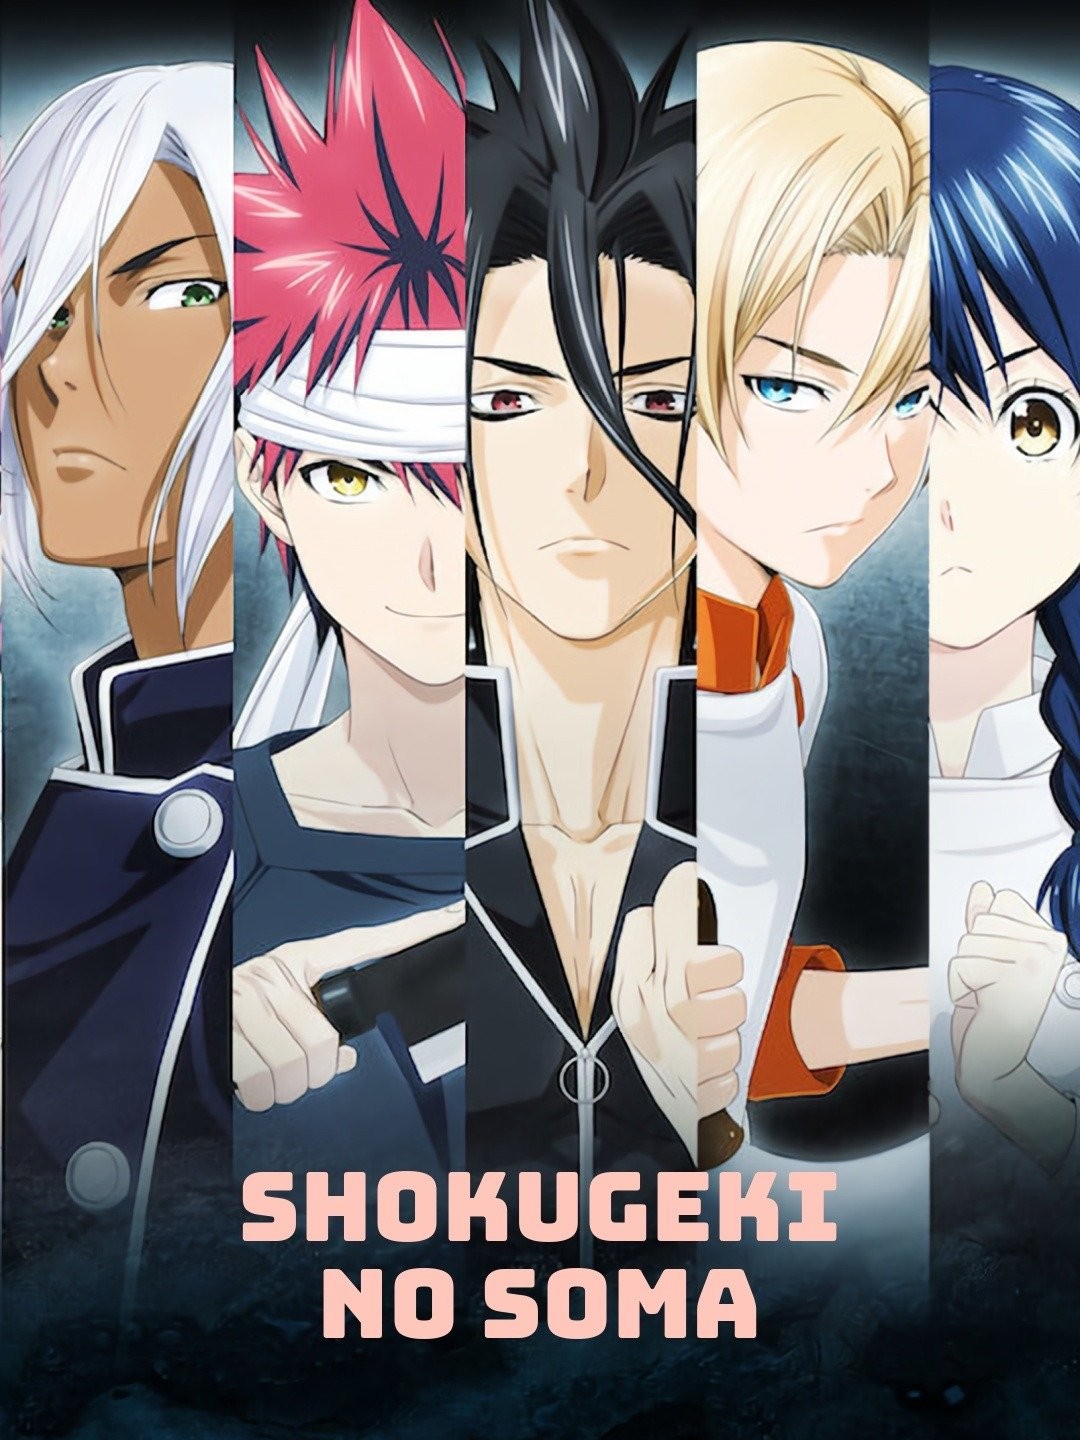 Food Wars! Shokugeki no Soma Season 2 - episodes streaming online